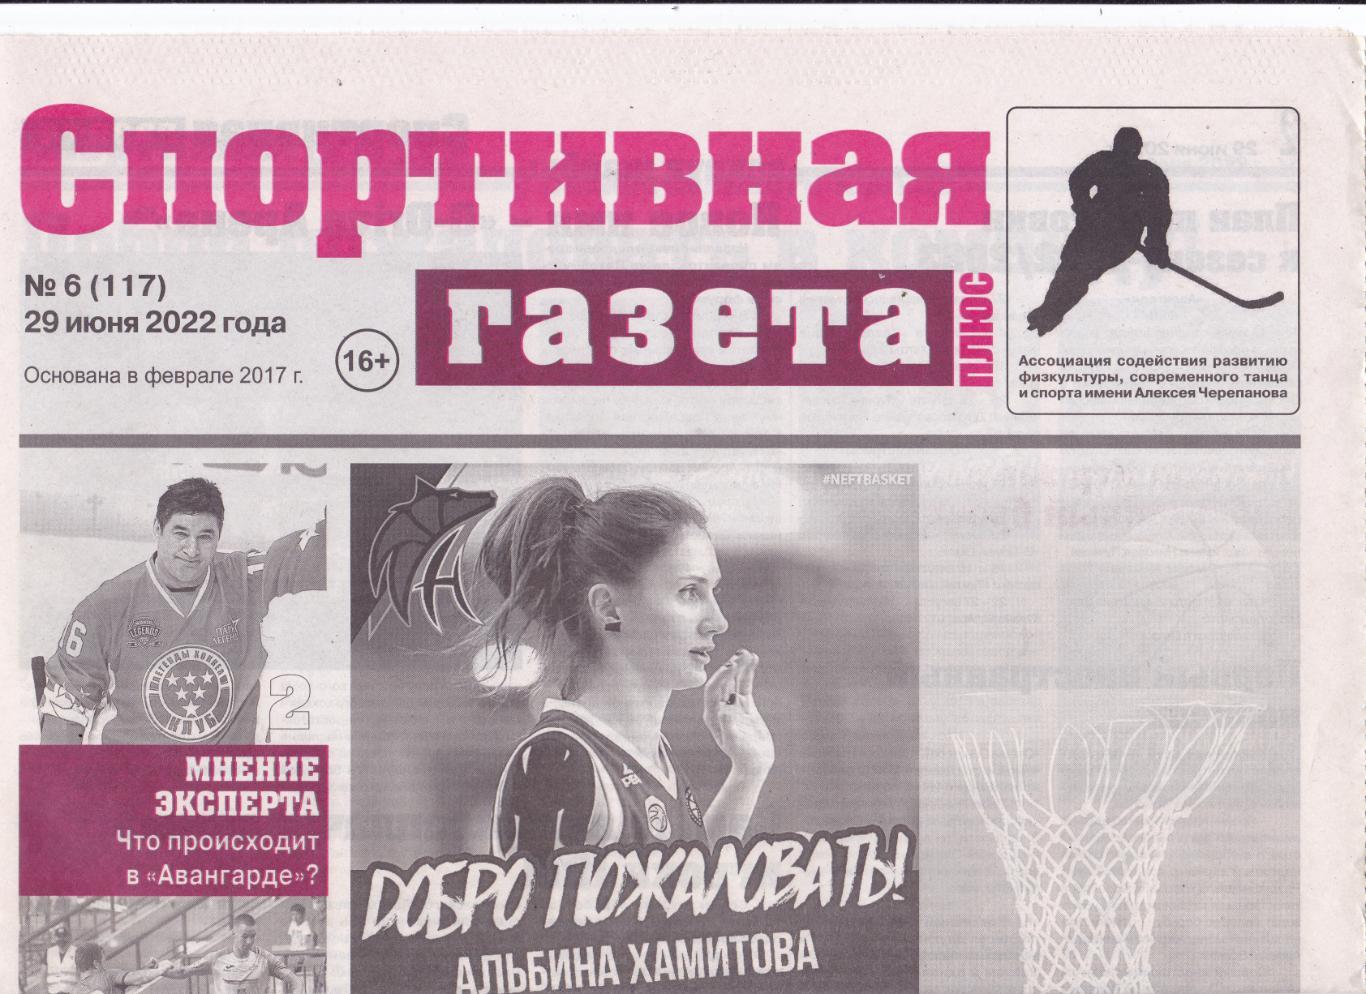 Омская спортивная газета 29.06.2022 (№6)